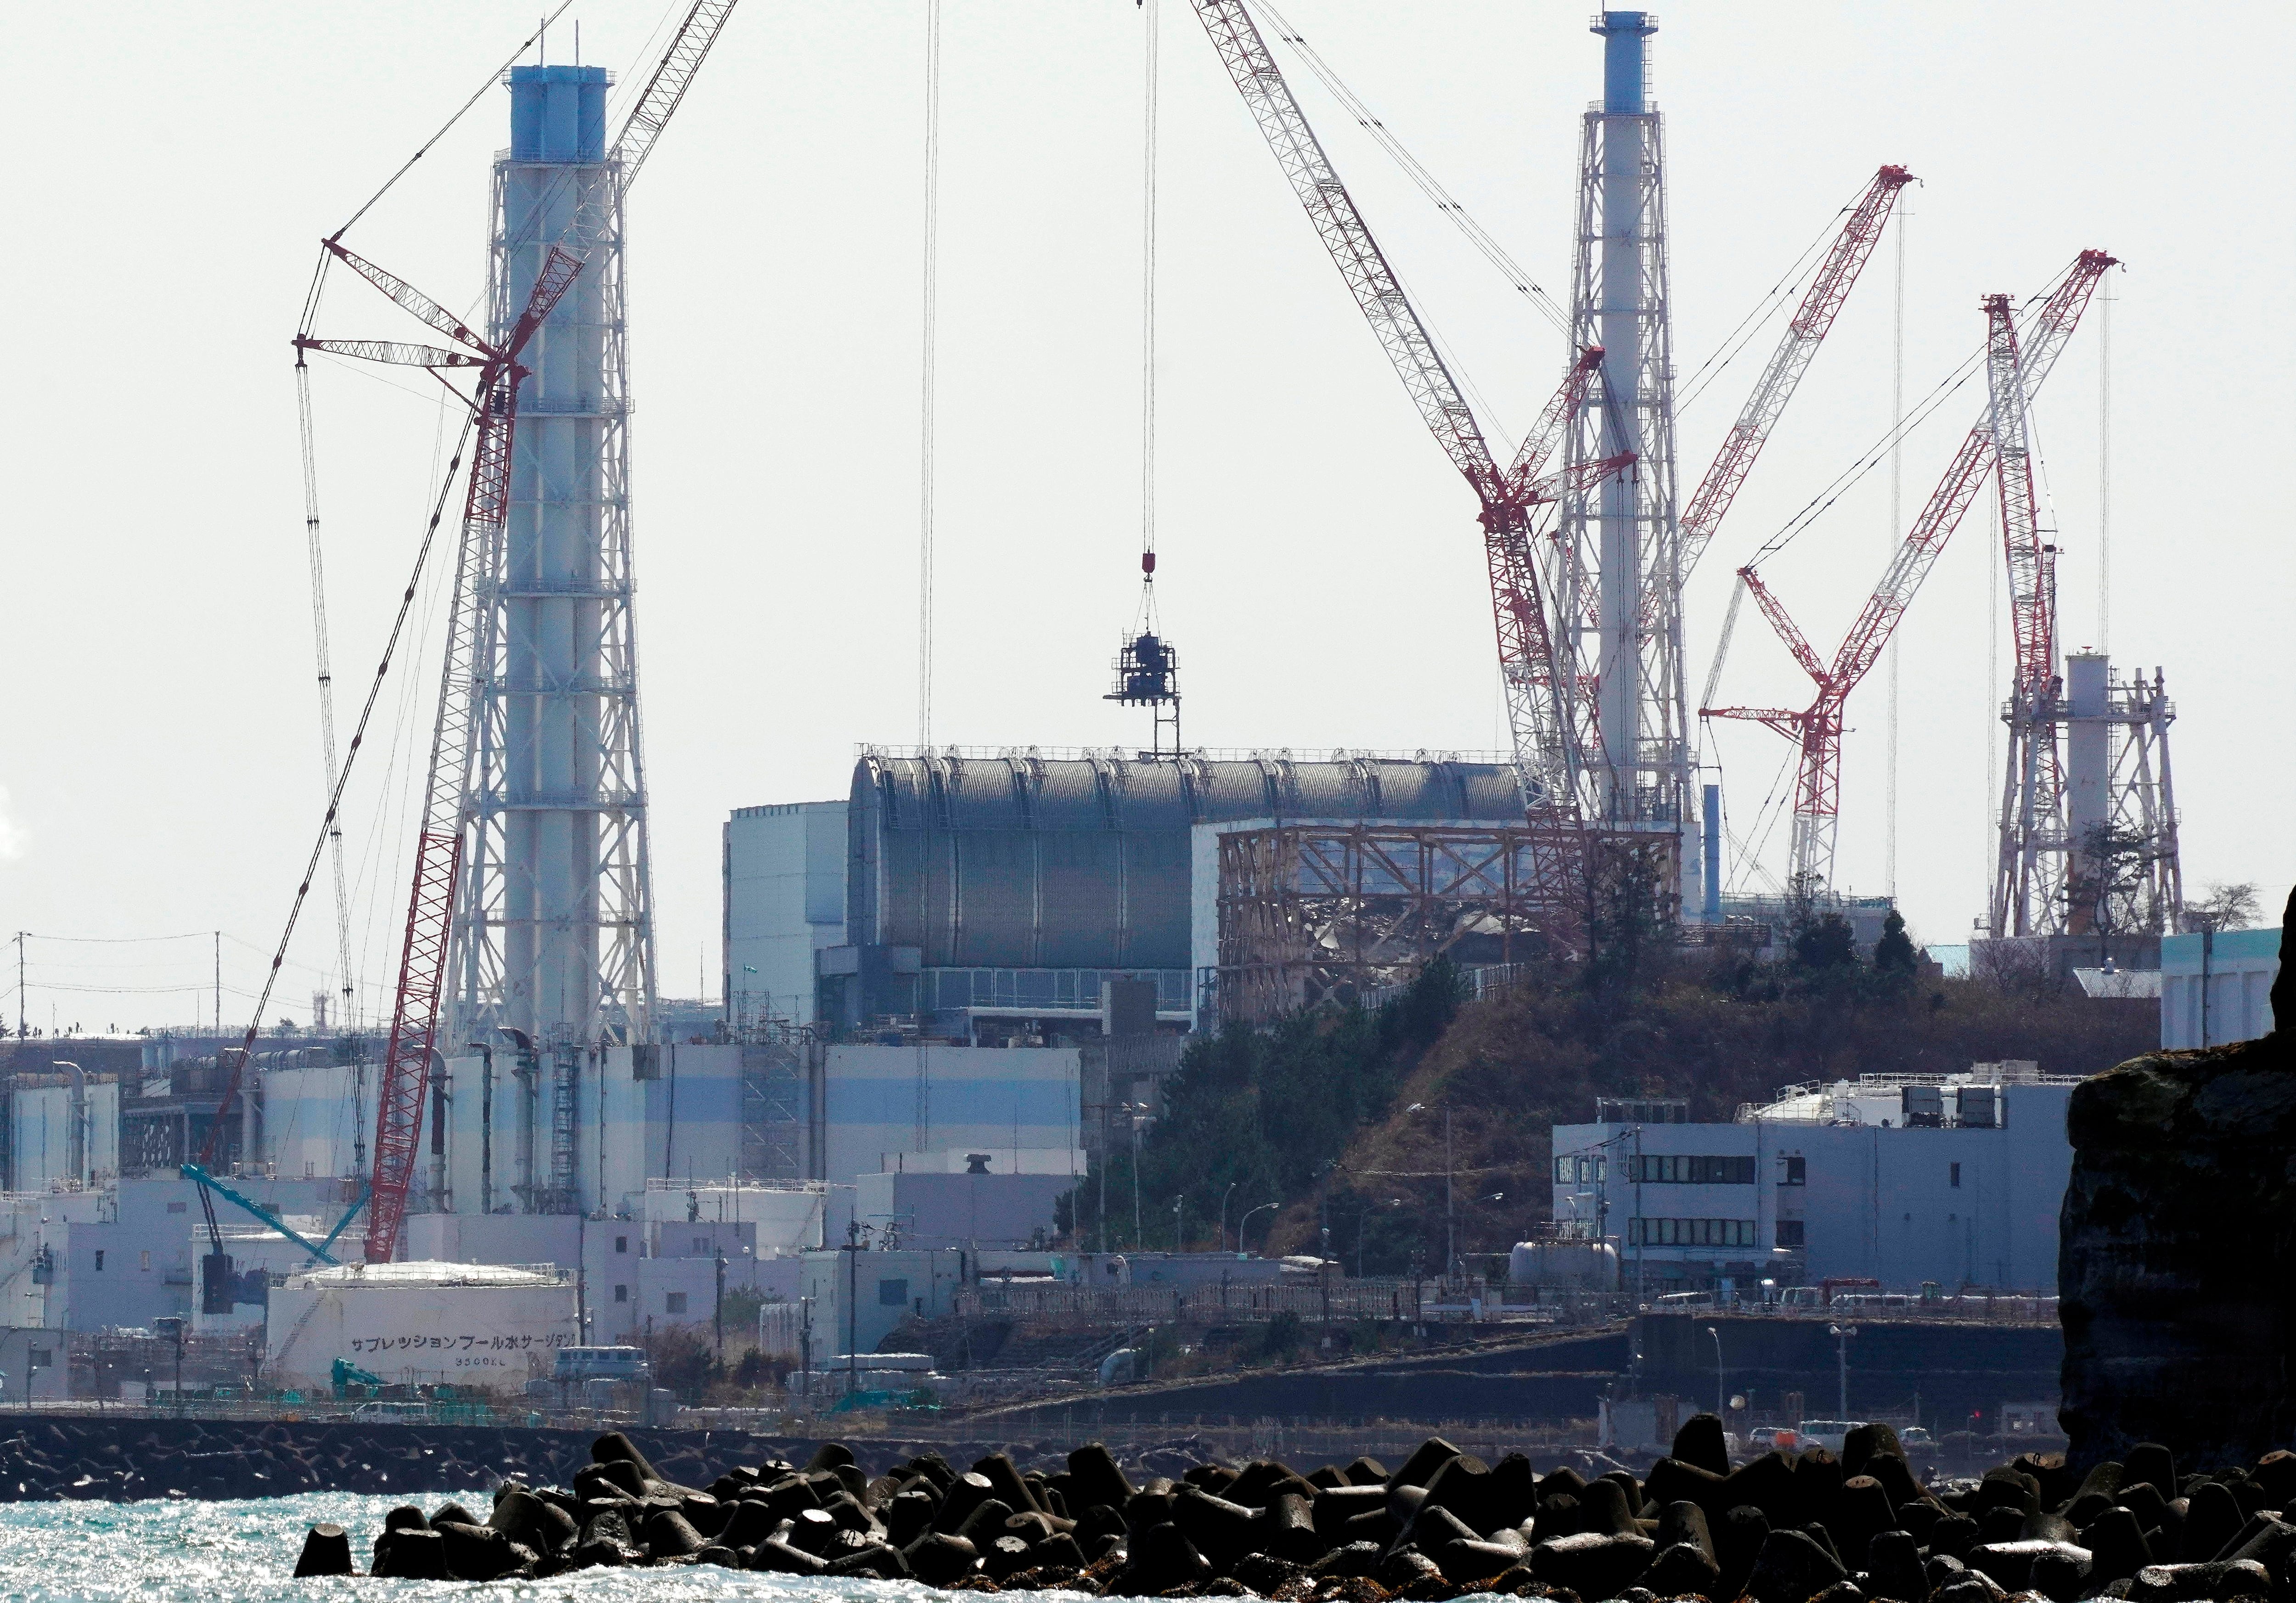 Vista de la Central Nuclear de Fukushima Daiichi de Tokyo Electrical Power Company (TEPCO) en proceso de desmantelamiento, vista desde Namie, prefectura de Fukushima, Japón, el 11 de marzo de 2021. El 13 de abril de 2021, el gobierno japonés decidió oficialmente liberar al océano agua tratada que contenía tritio de la paralizada central nuclear de Fukushima Daiichi. EFE/EPA/KIMIMASA MAYAMA
